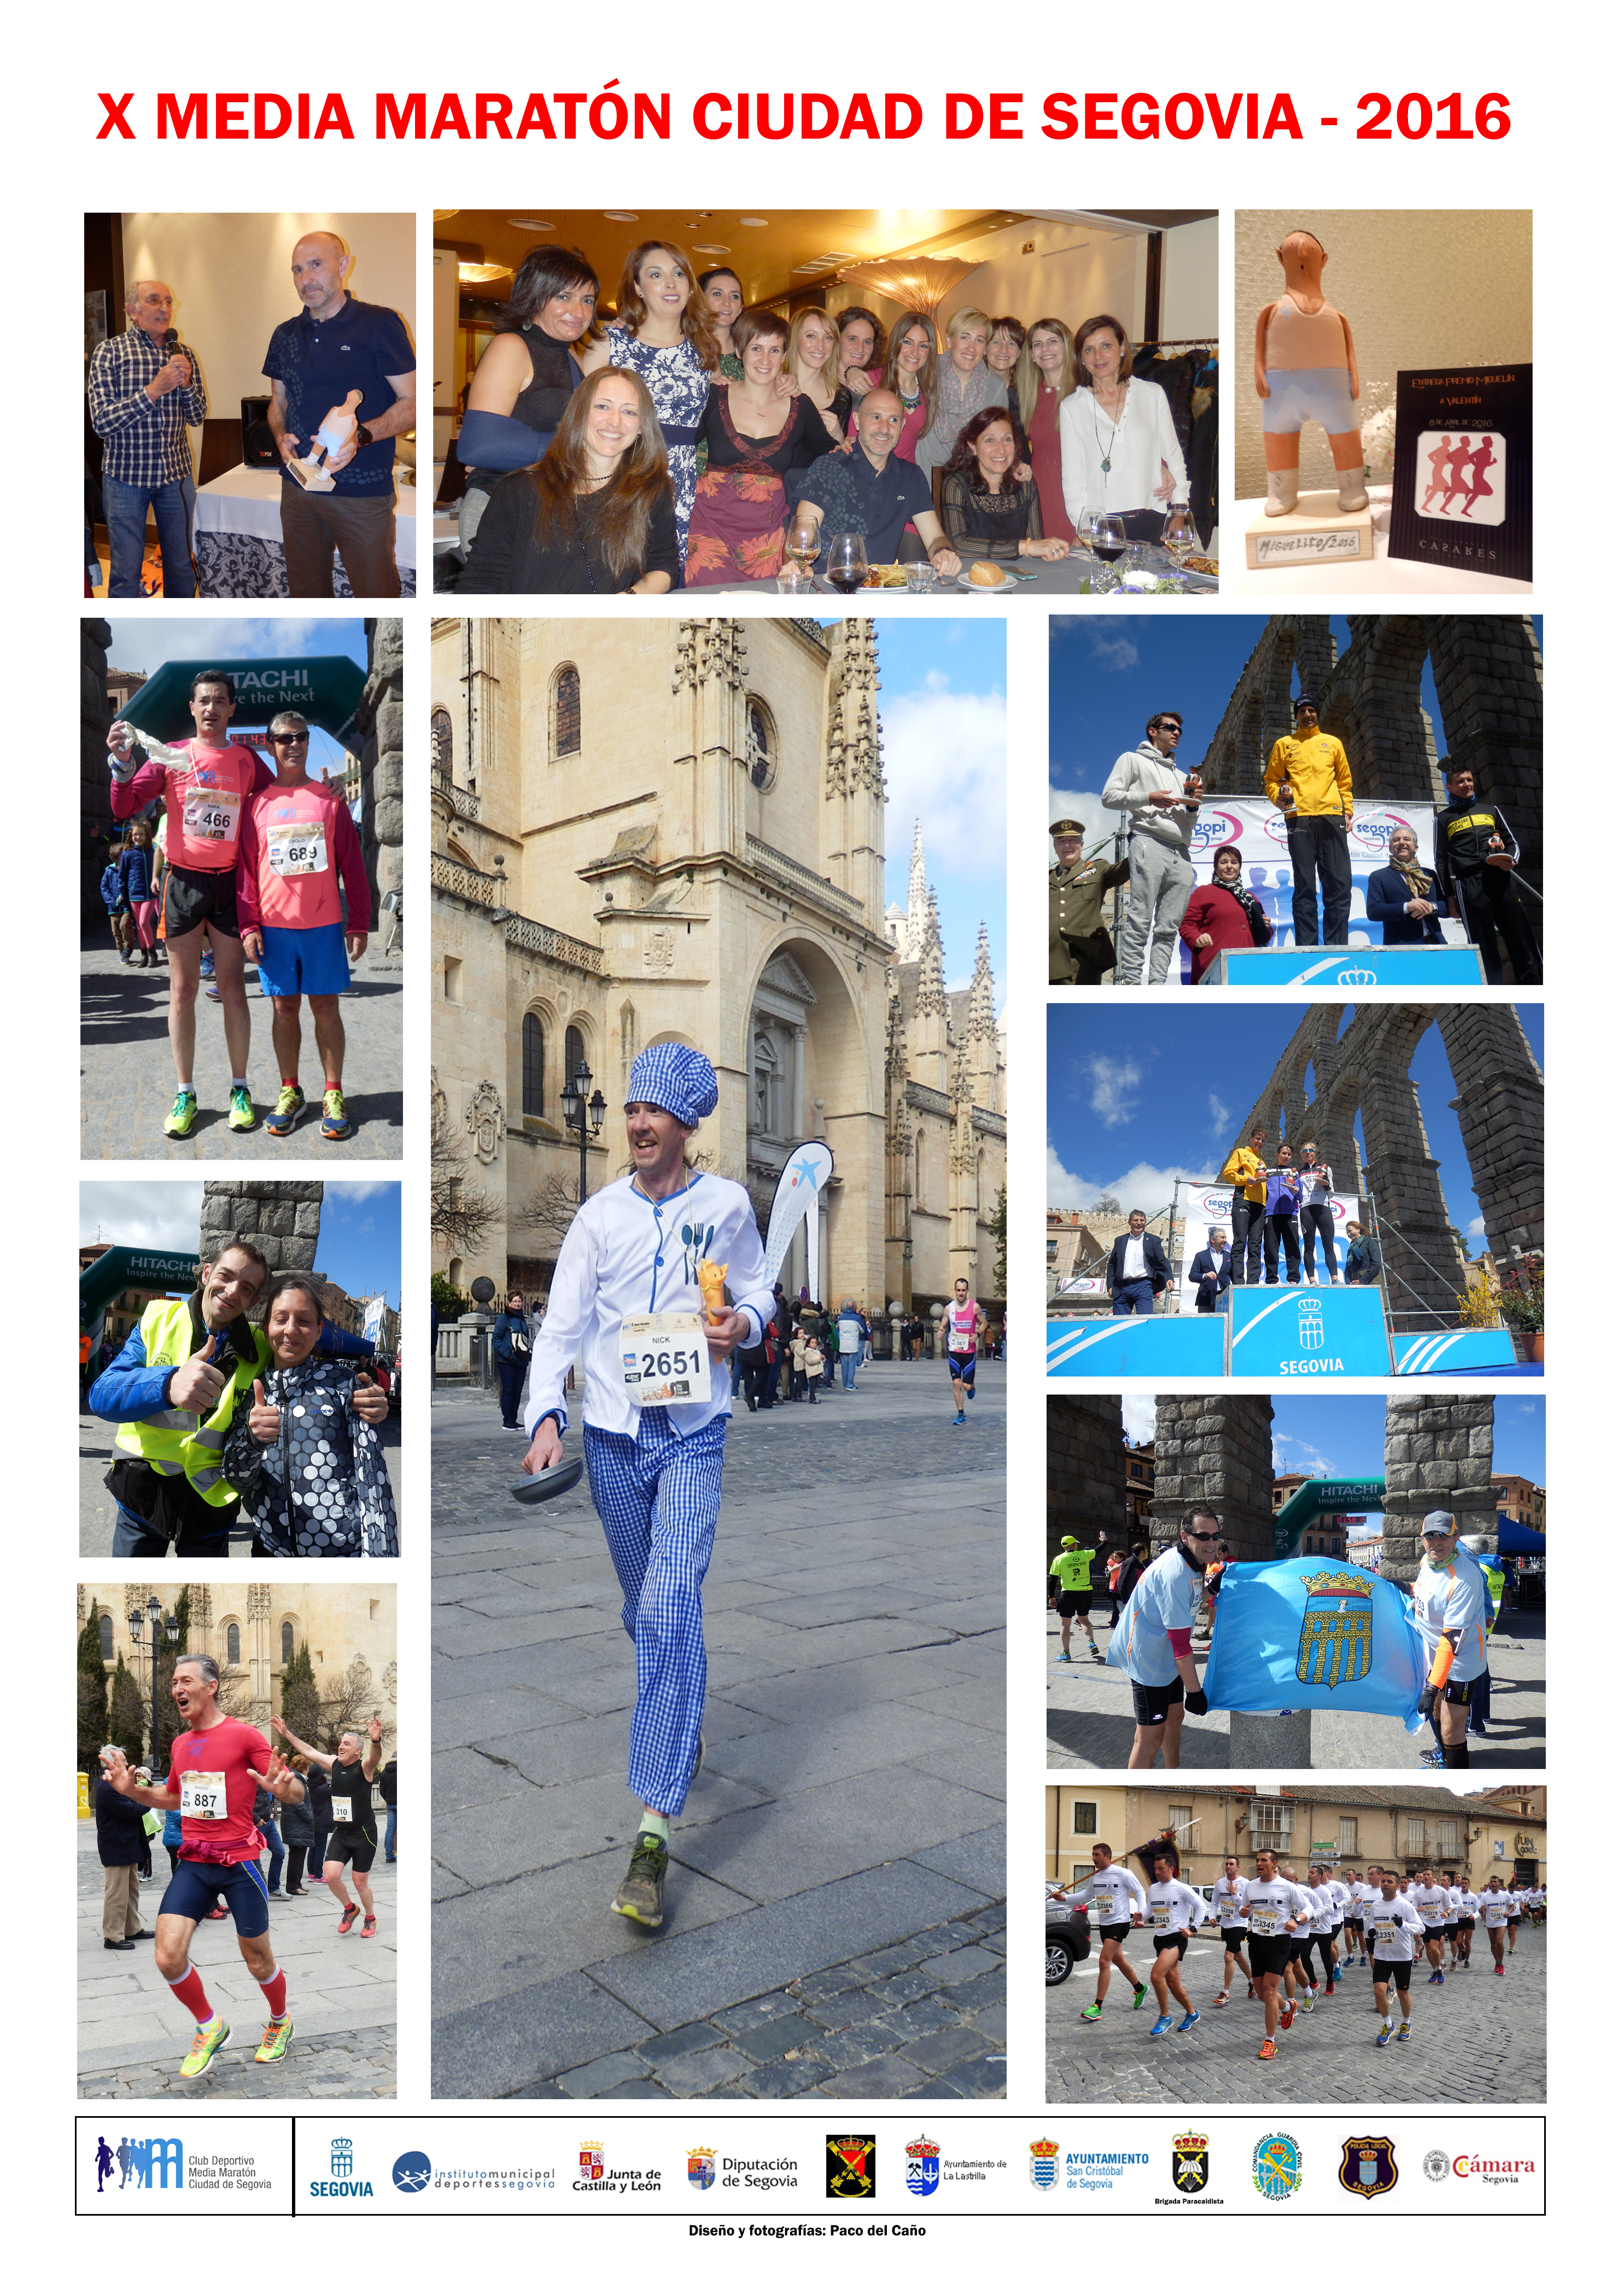 Cartel fotográfico de actividades relacionadas con la X Media Maratón Ciudad de Segovia